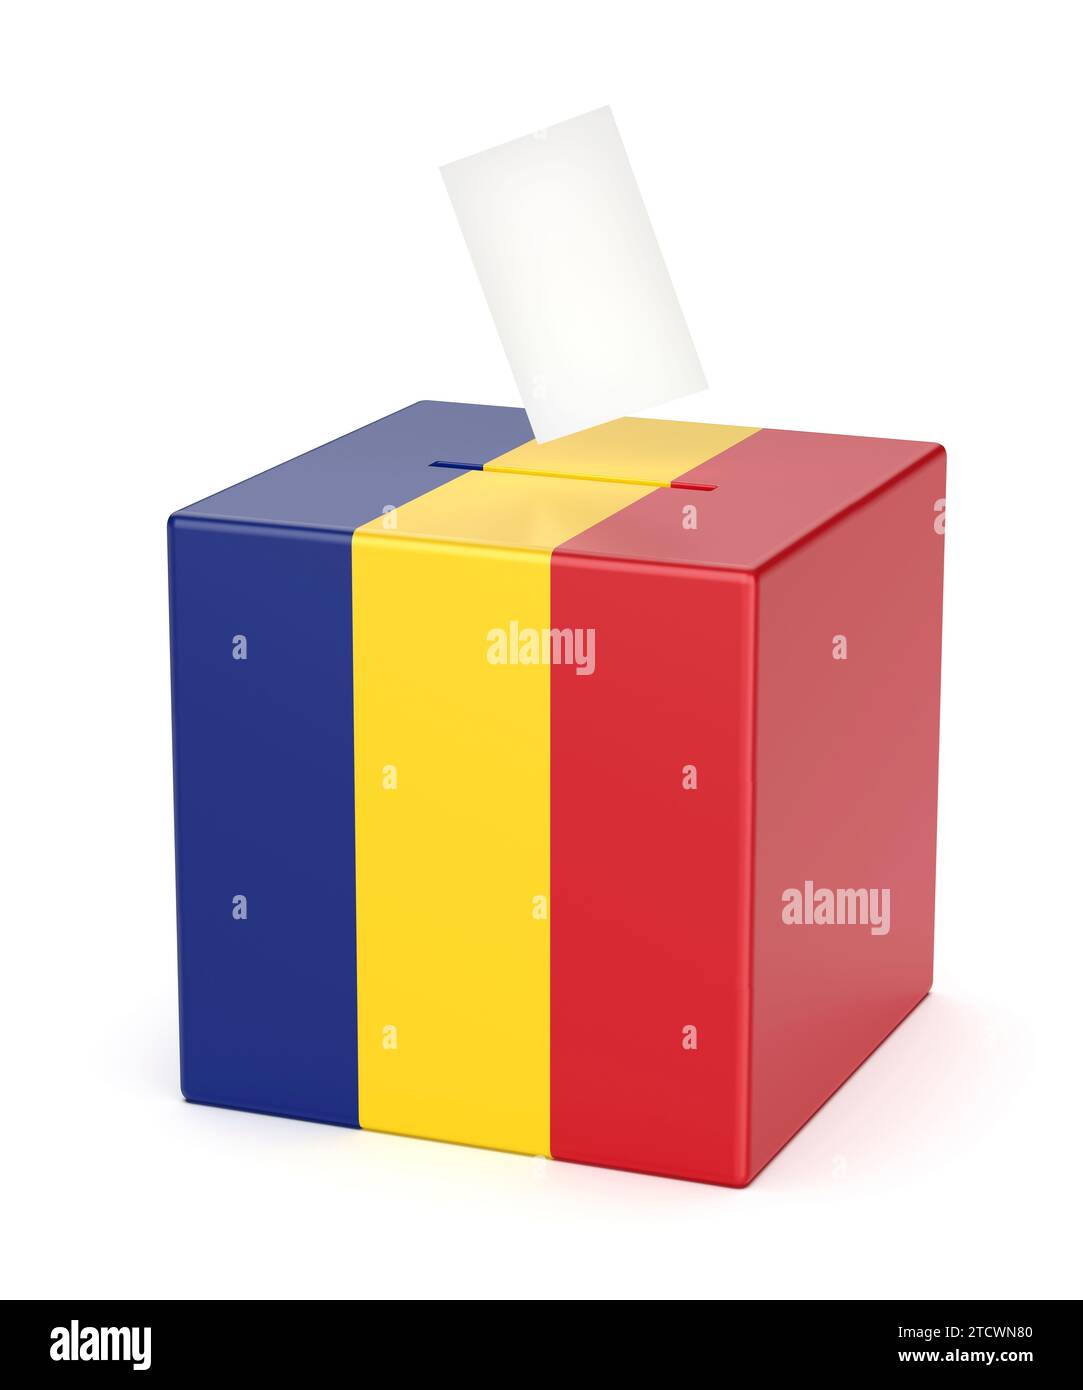 Image conceptuelle pour l'élection en Roumanie, urne avec papier de vote Banque D'Images